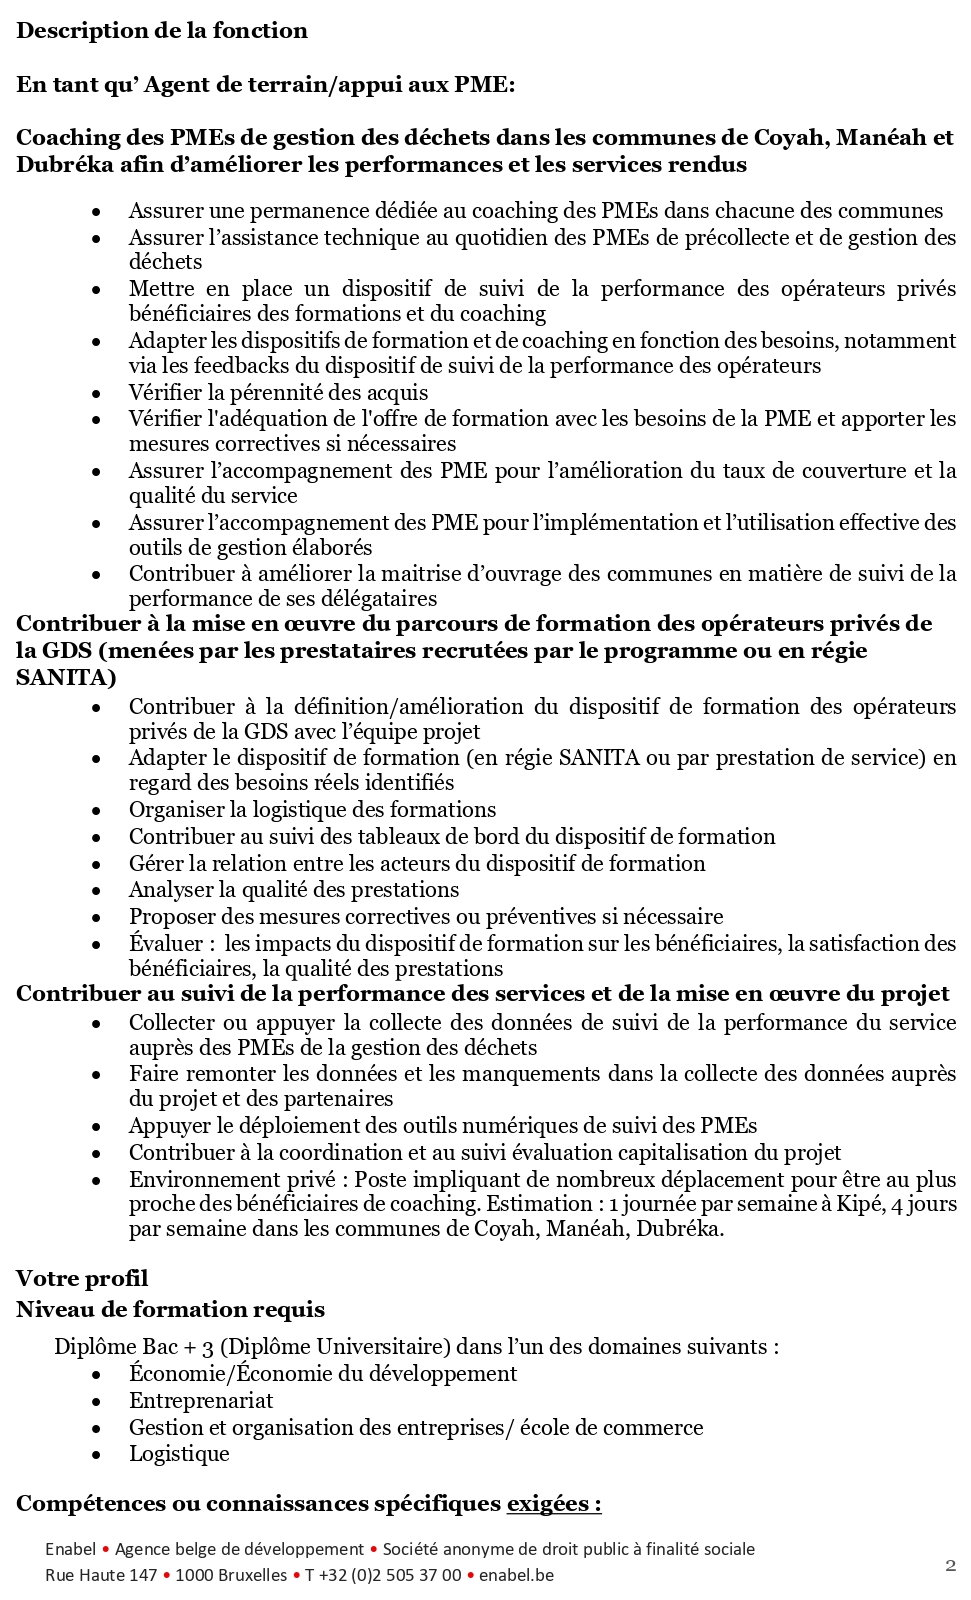 Avis de recrutement d'Agent de terrain/appui aux PME (h/f/x) – Guinée Conakry | Page 2